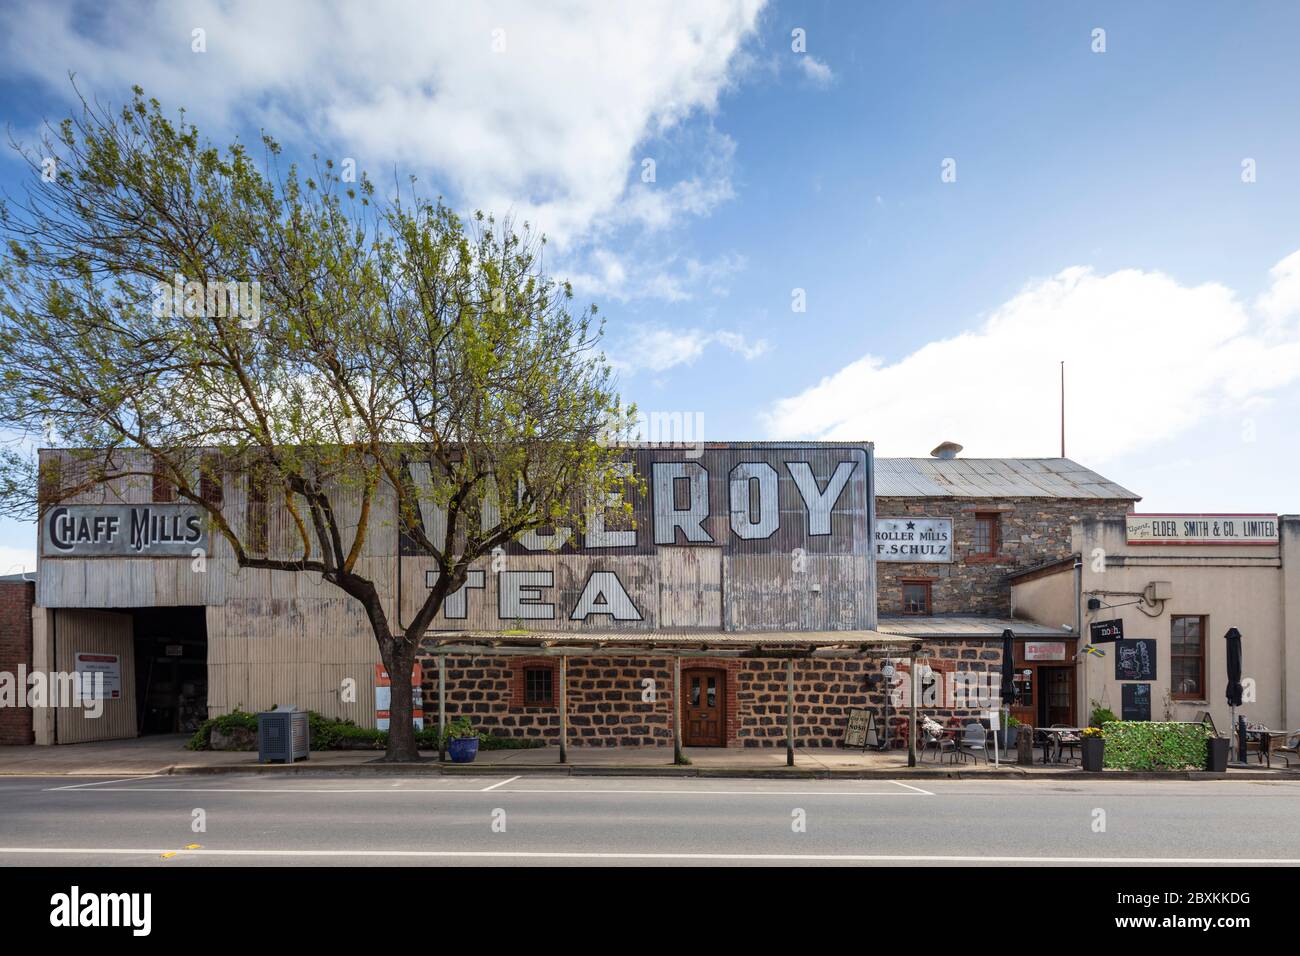 Tanunda Australie méridionale 9 septembre 2019 : Antique signalisations pour Viceroy Tea sur la façade d'un café à Tanunda, Australie méridionale Banque D'Images